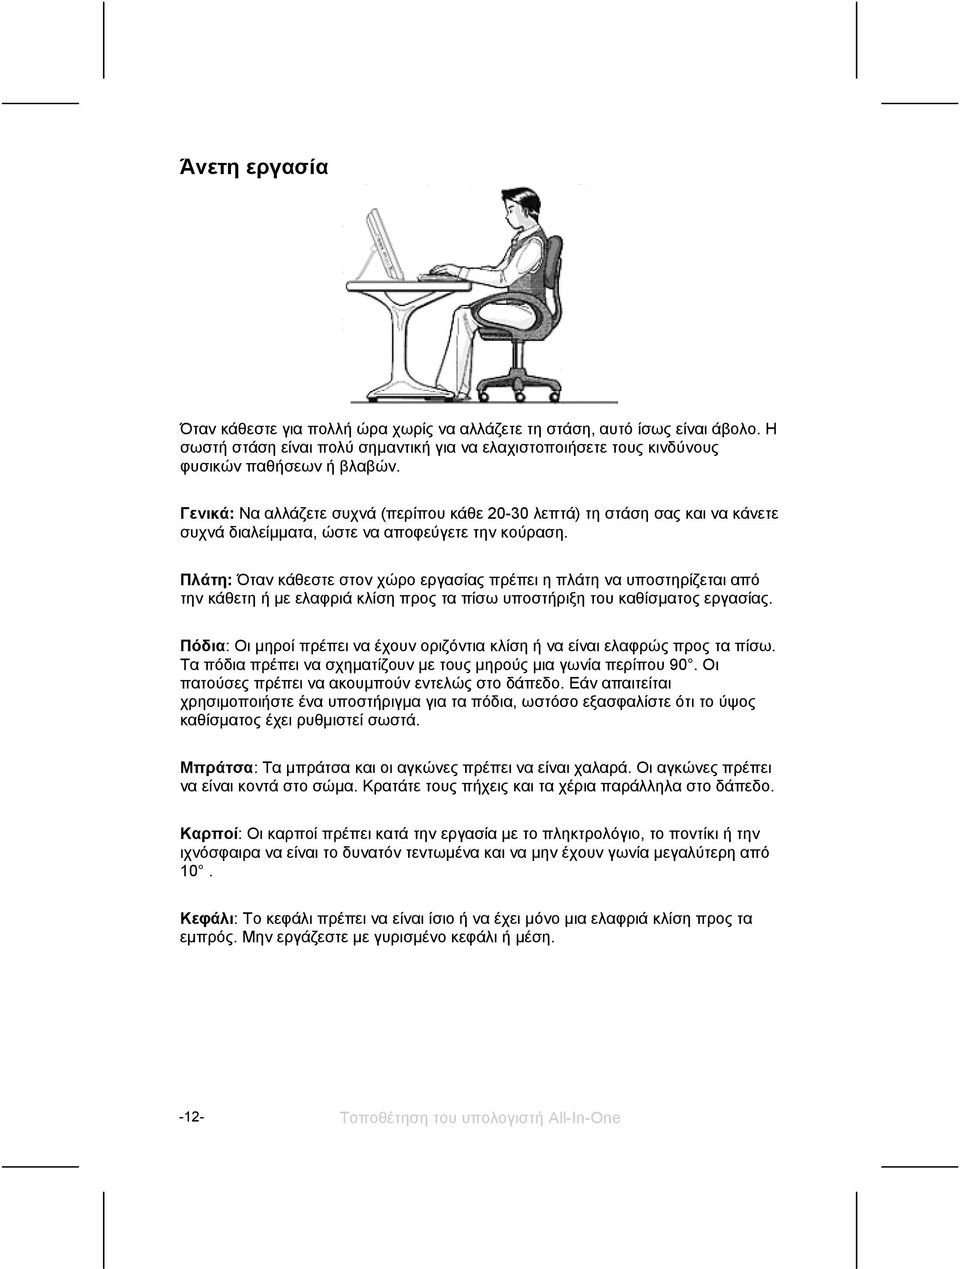 Πλάτη: Όταν κάθεστε στον χώρο εργασίας πρέπει η πλάτη να υποστηρίζεται από την κάθετη ή με ελαφριά κλίση προς τα πίσω υποστήριξη του καθίσματος εργασίας.